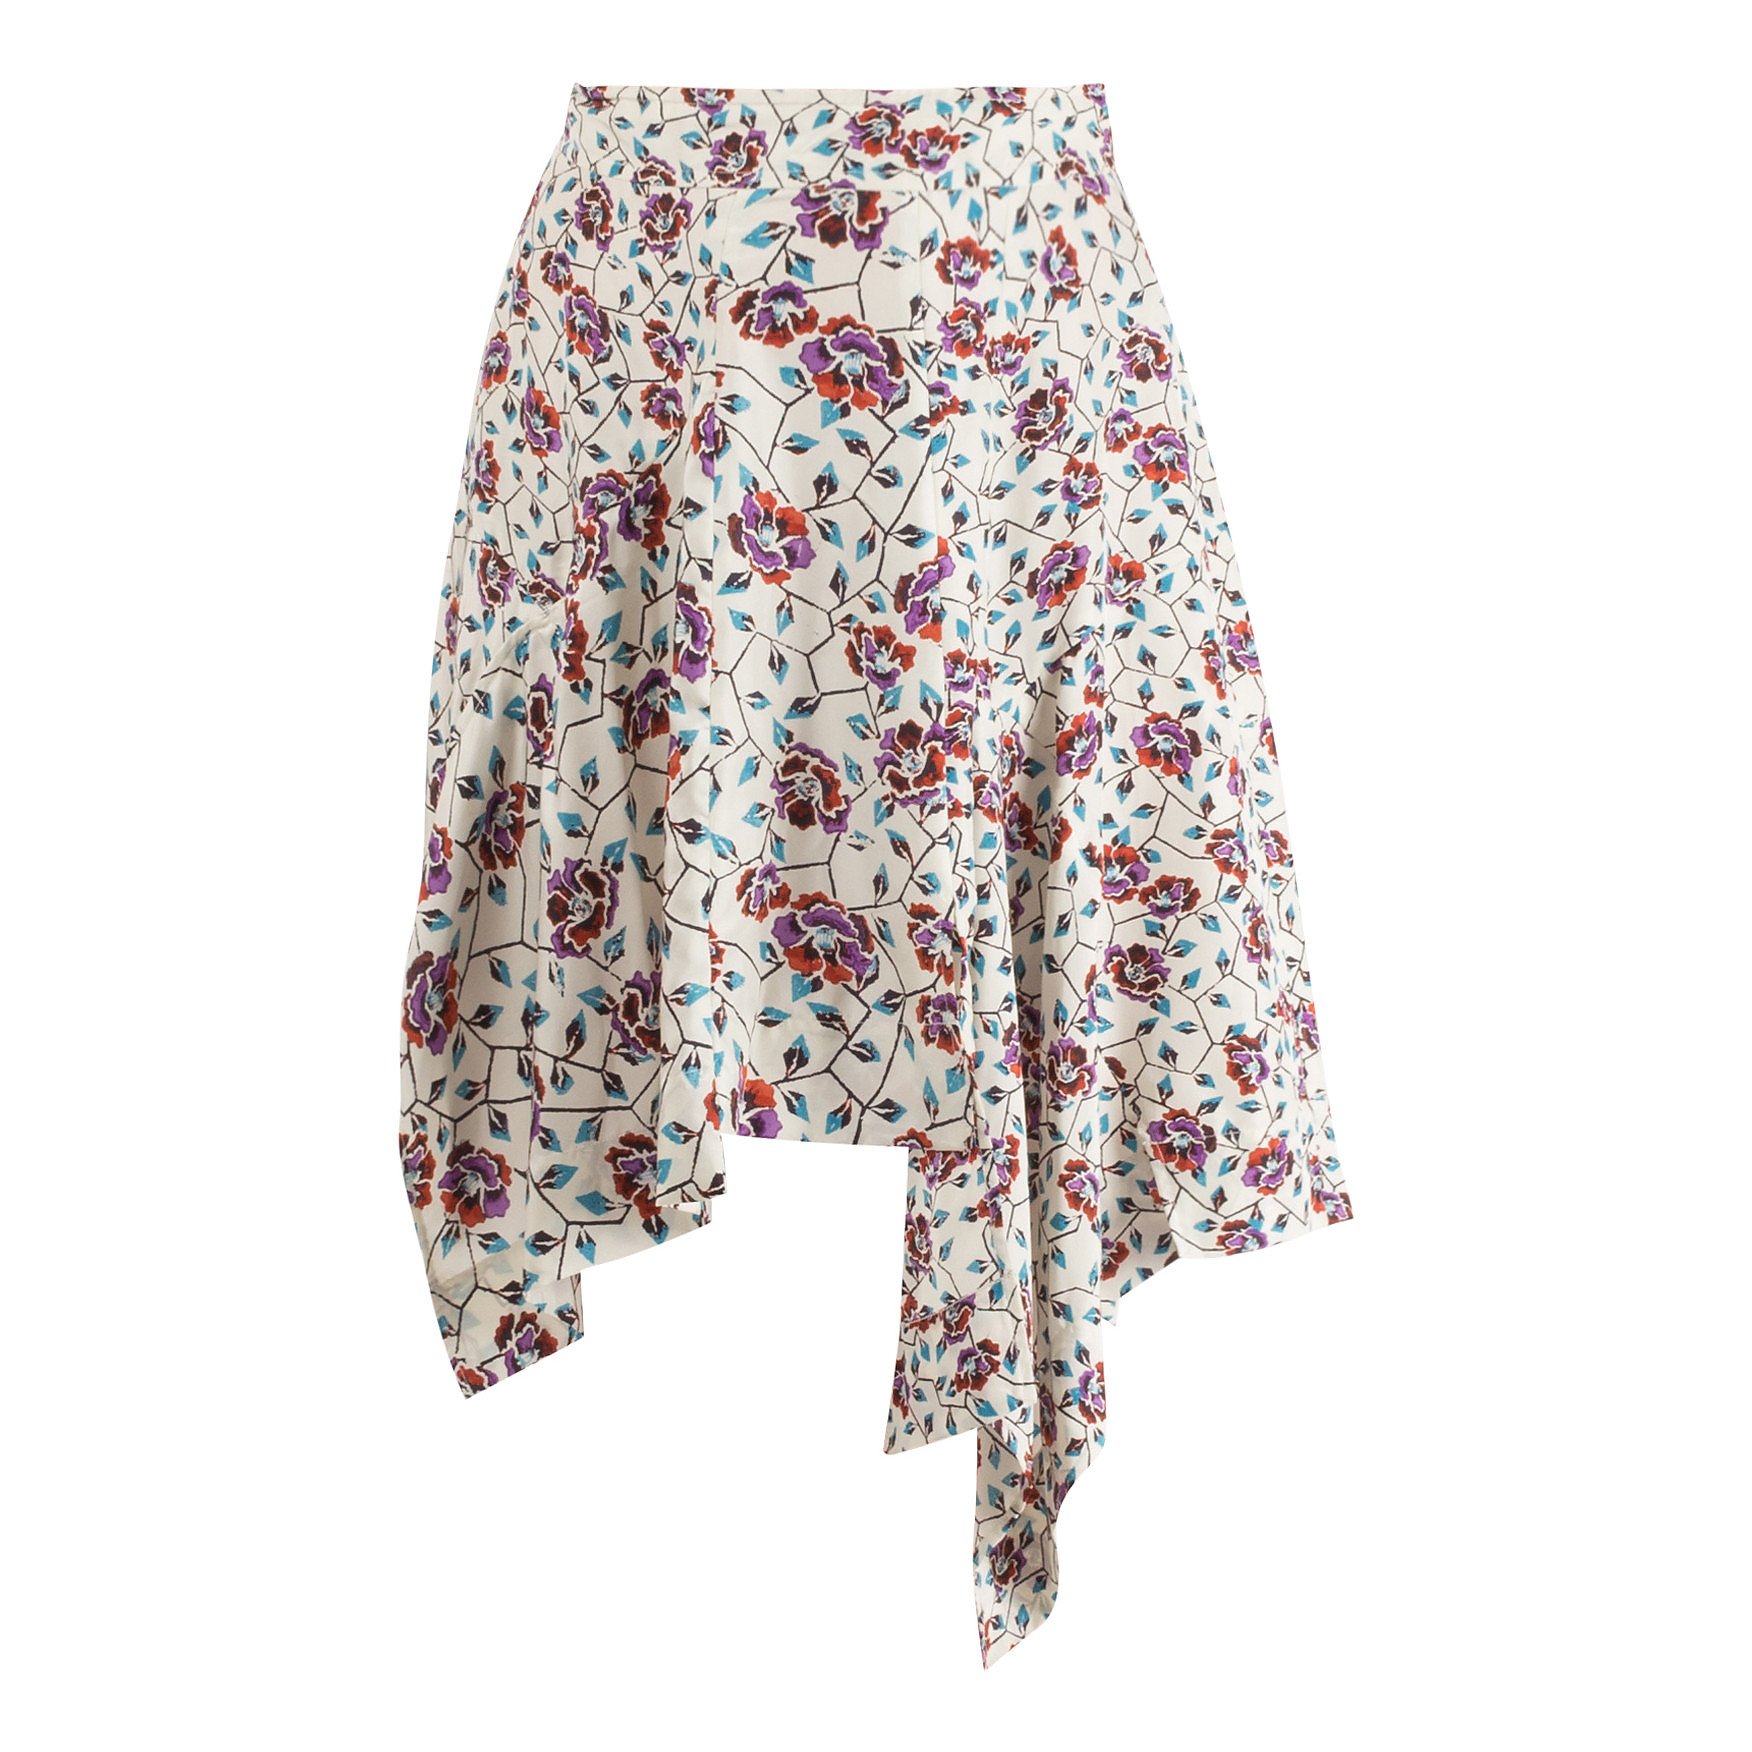 kig ind Rullesten Melting Rent Buy Isabel Marant Floral Silk Skirt and Top Set | MY WARDROBE HQ